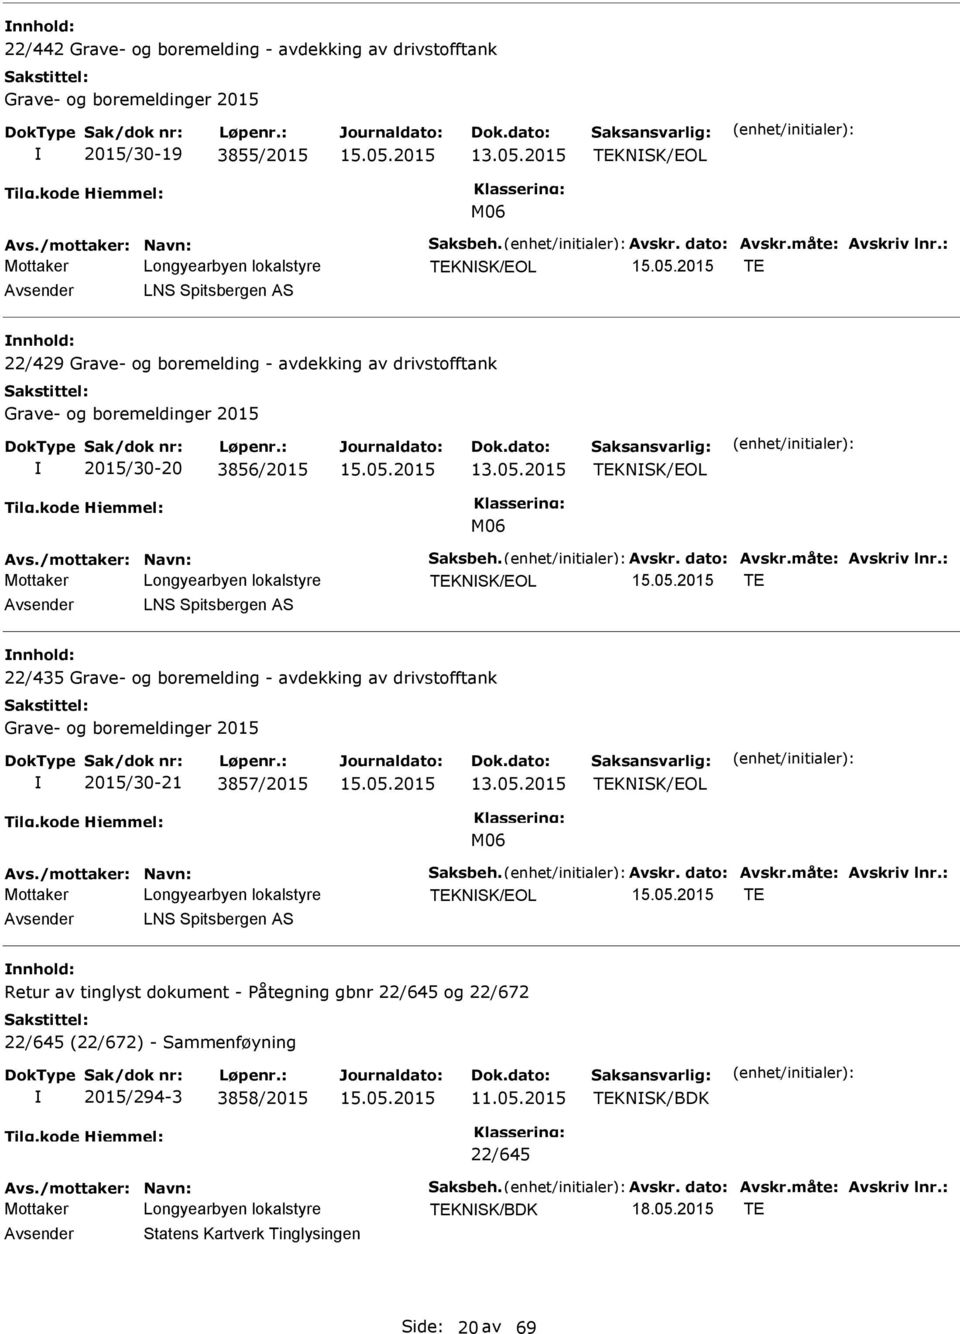 boremelding - avdekking av drivstofftank Grave- og boremeldinger 2015 2015/30-21 3857/2015 TEKNSK/EOL M06 Mottaker TEKNSK/EOL TE LNS Spitsbergen S Retur av tinglyst dokument -